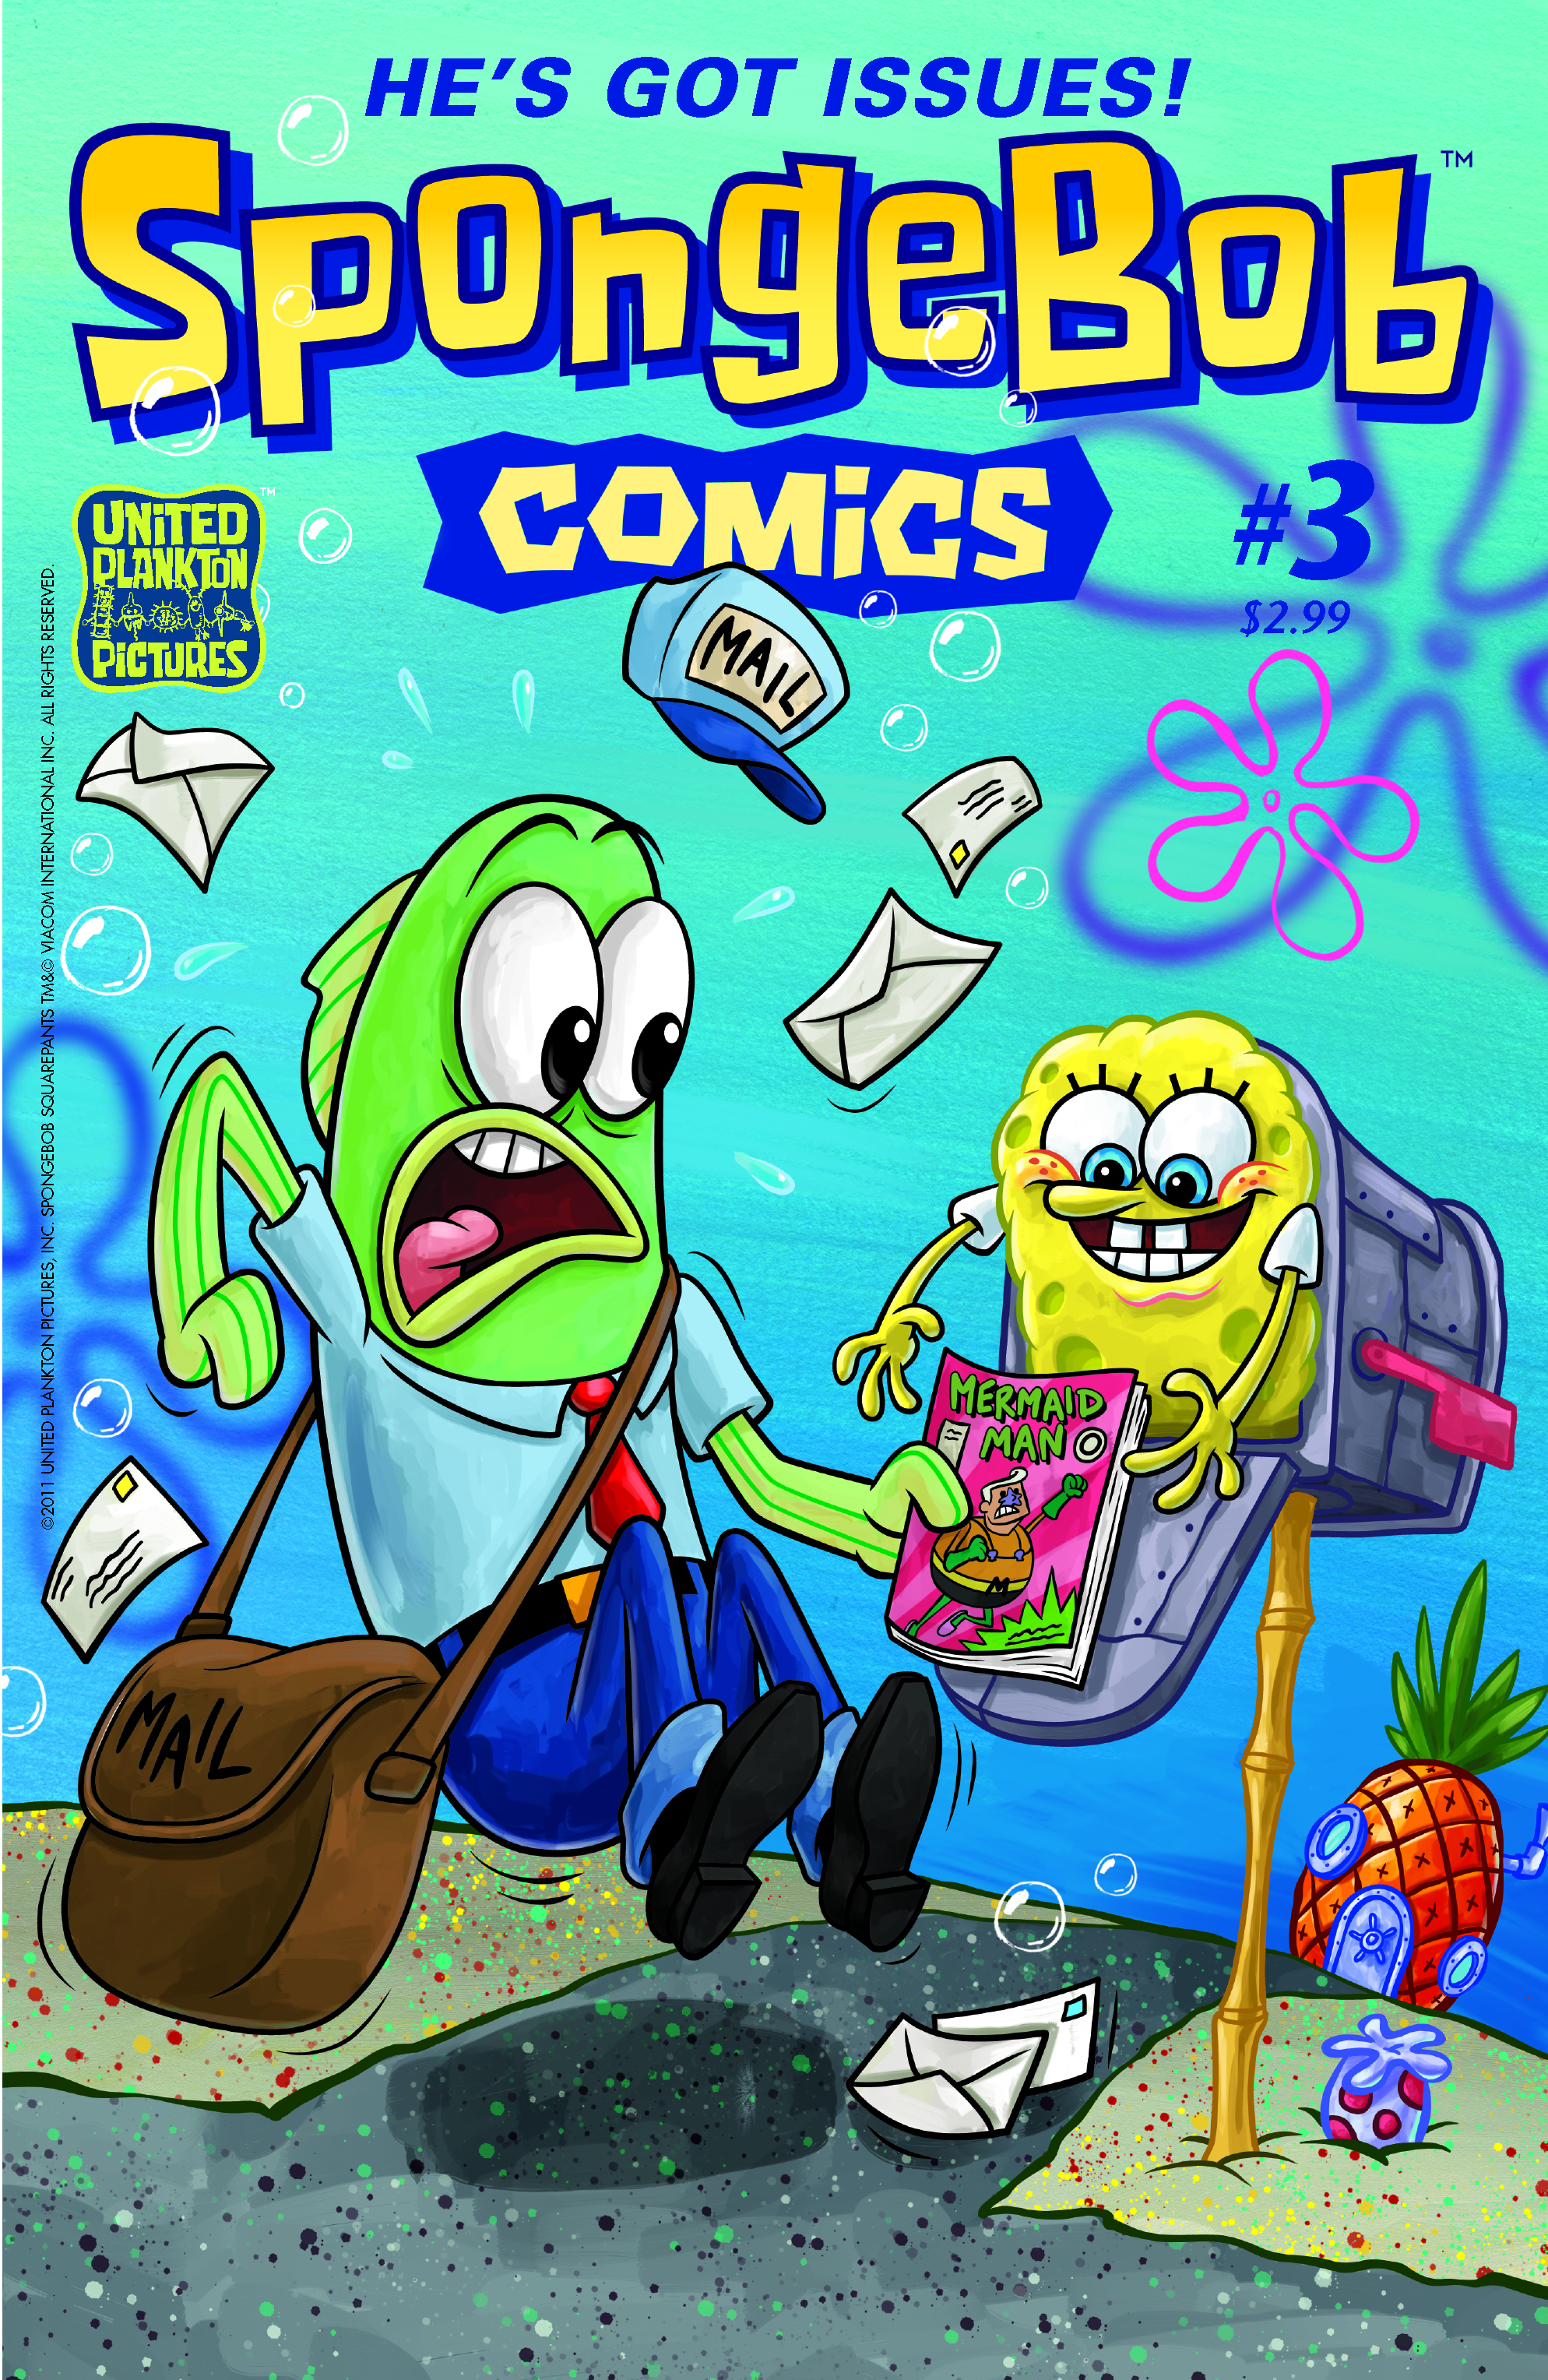 SPONGEBOB COMICS #3